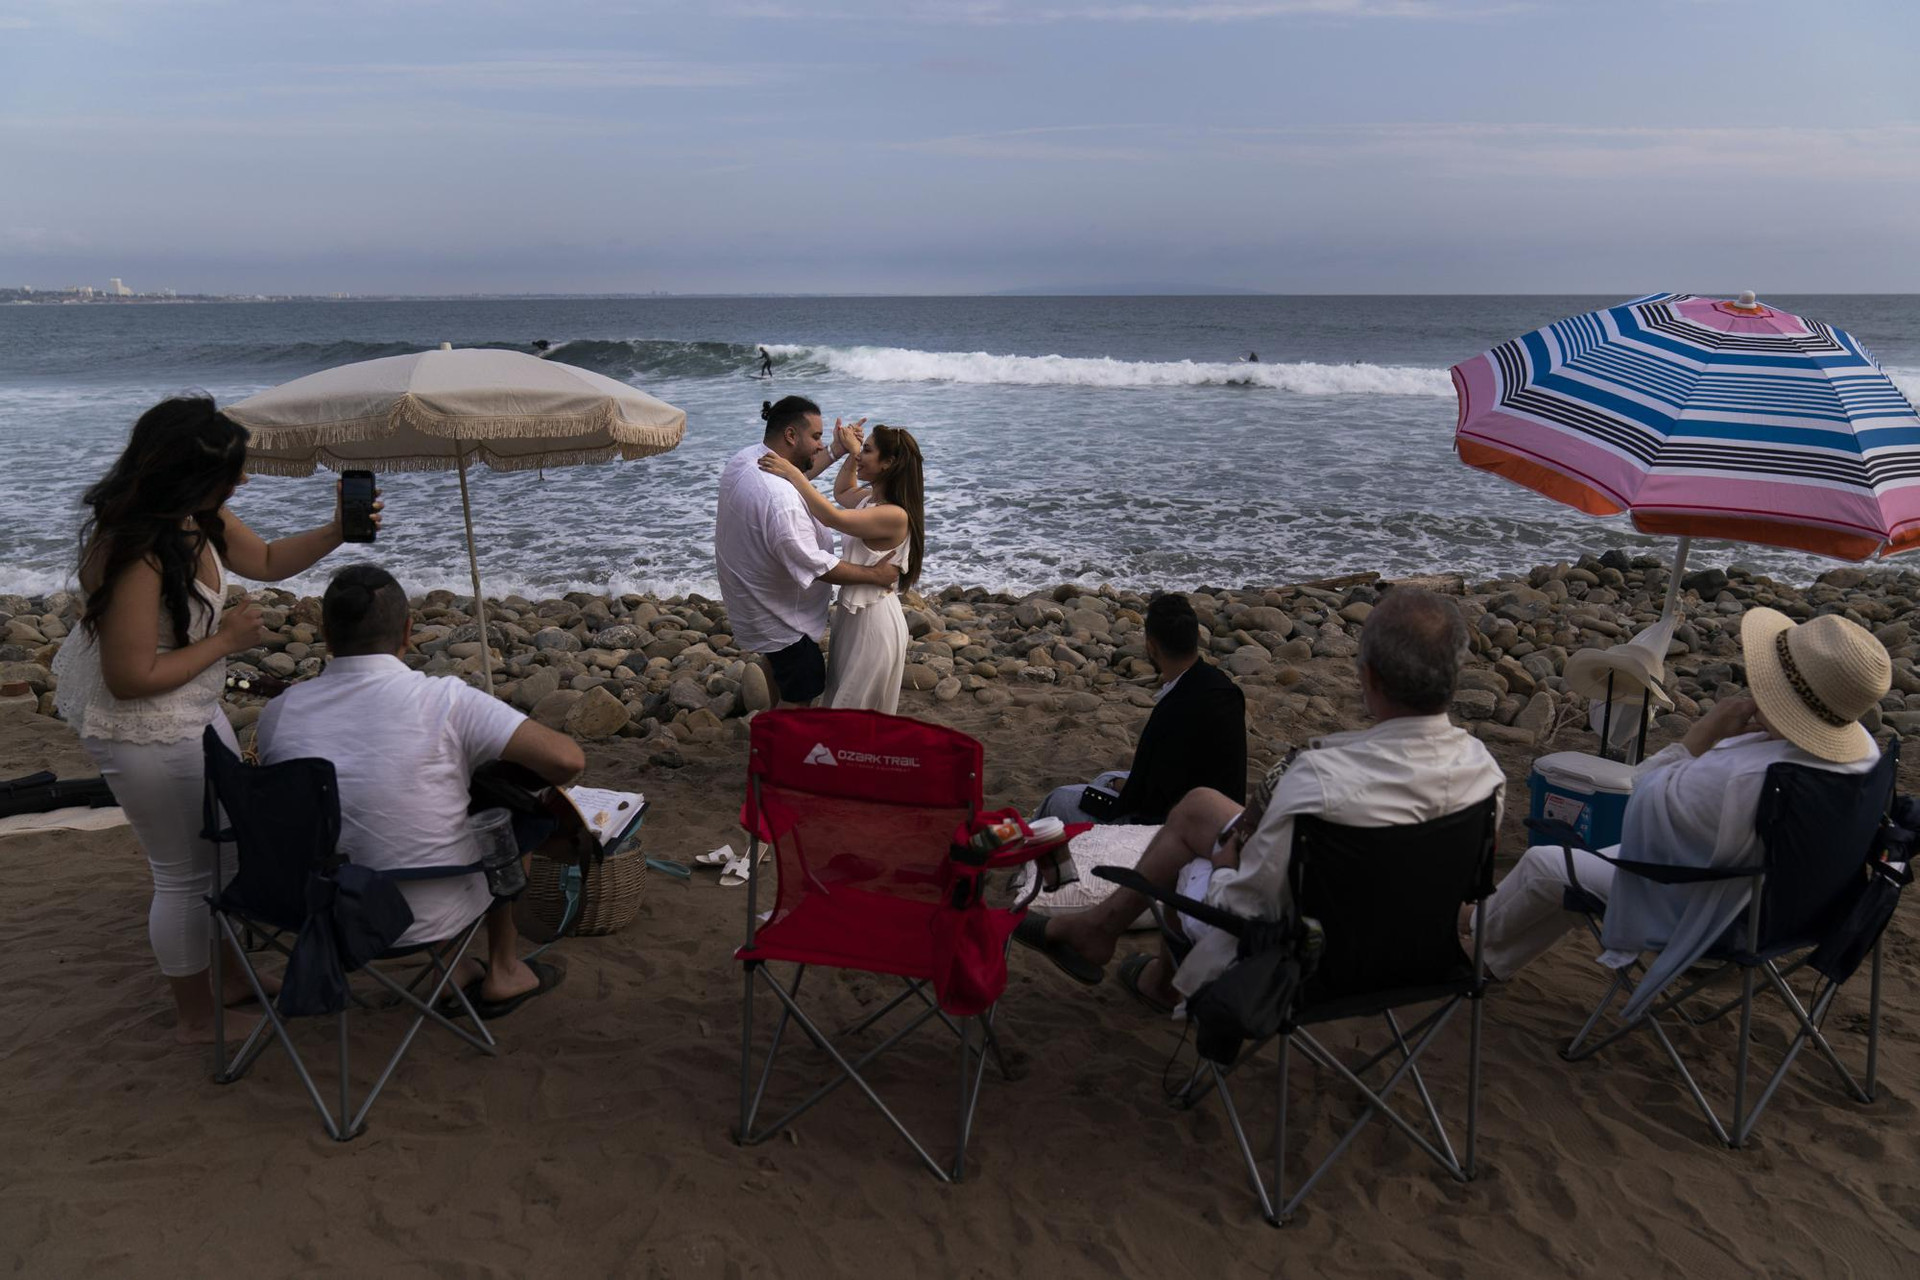 Pejiman Sabet và vợ anh, Gili, khiêu vũ cùng các thành viên trong gia đình của họ trên Bãi biển Topanga ở Malibu, California, Mỹ. Ảnh: AP